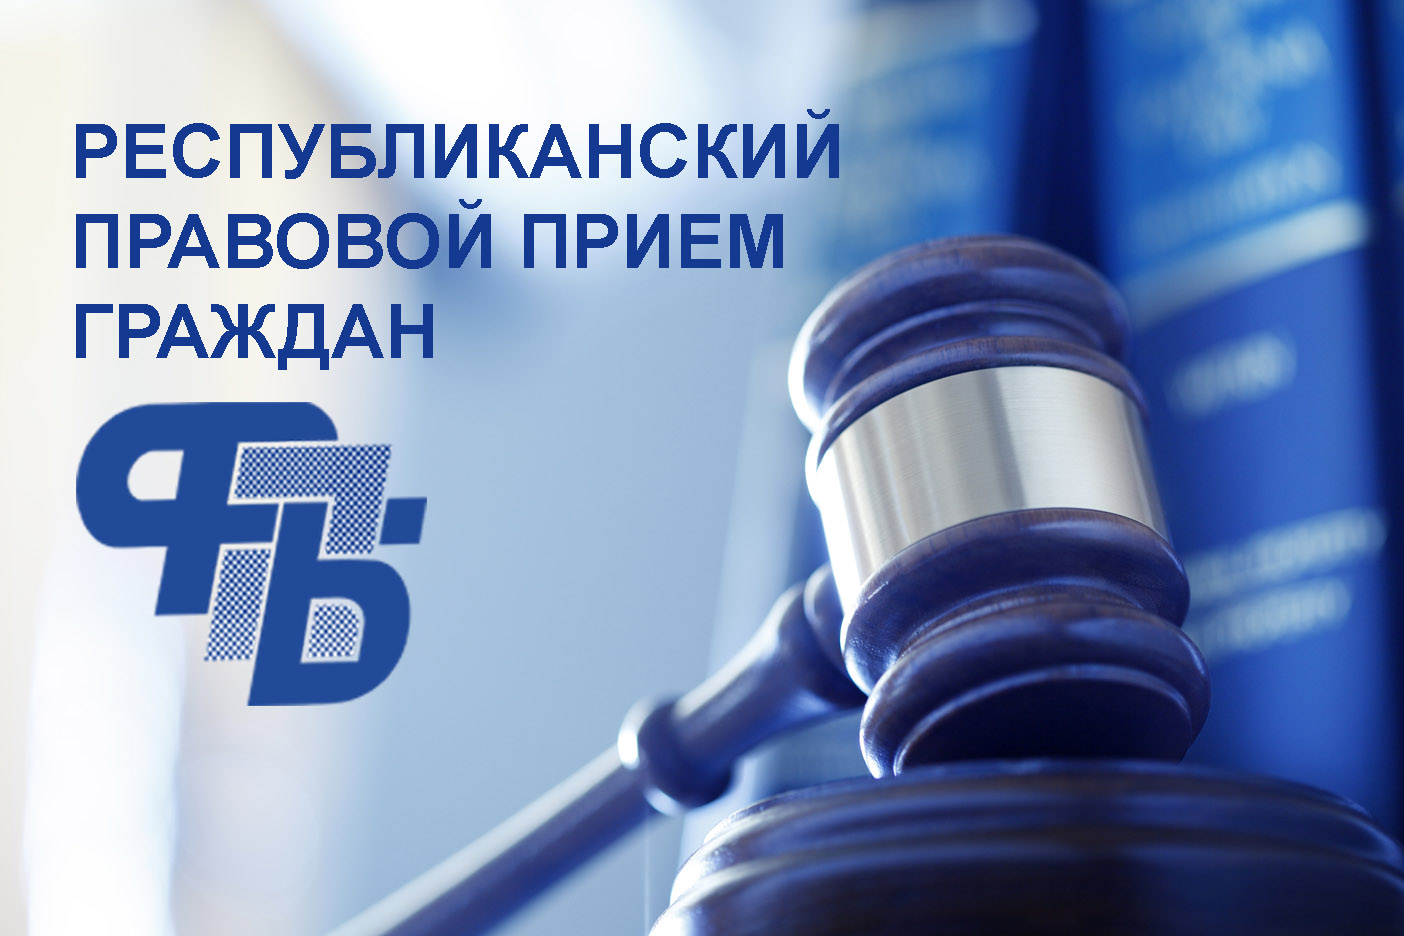 21 декабря в Бобруйском районе пройдет профсоюзный правовой прием граждан